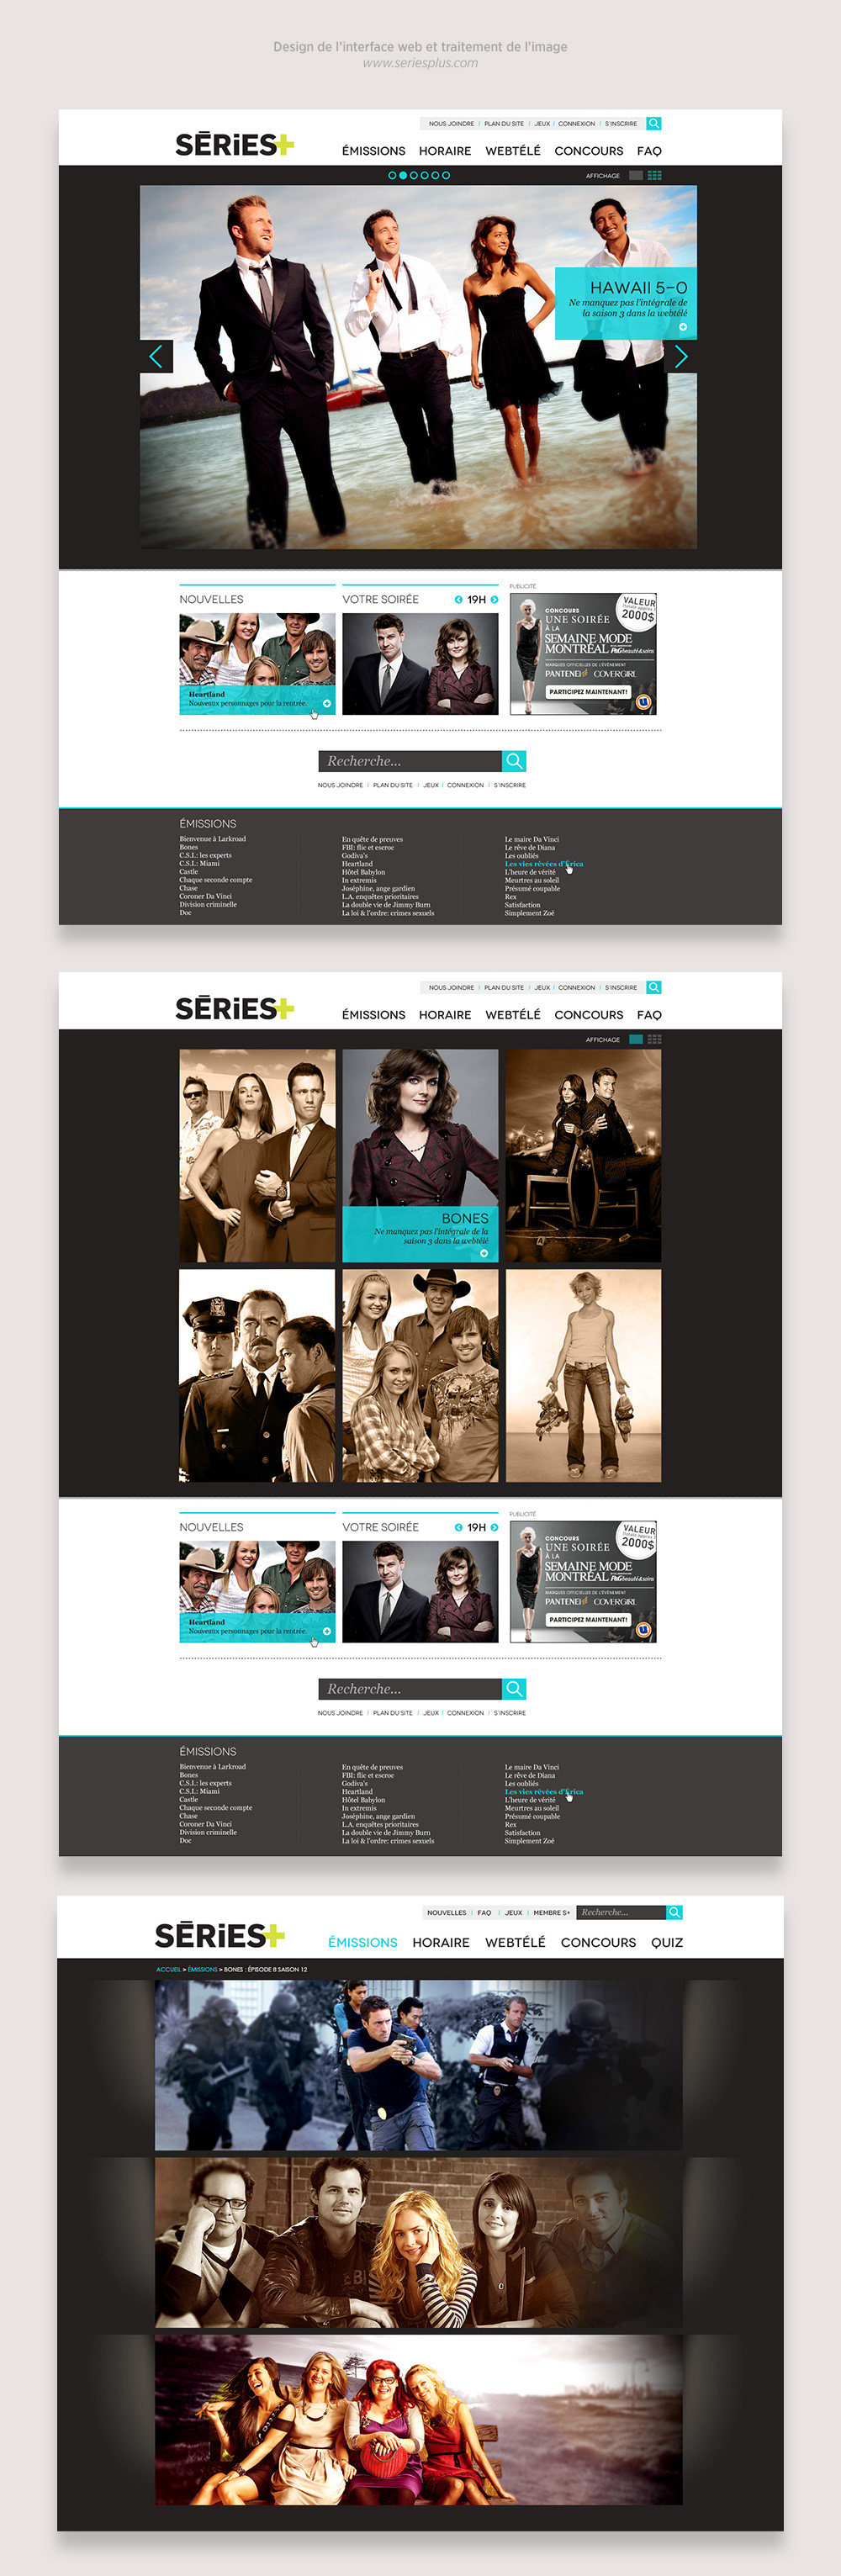 Website Design television website